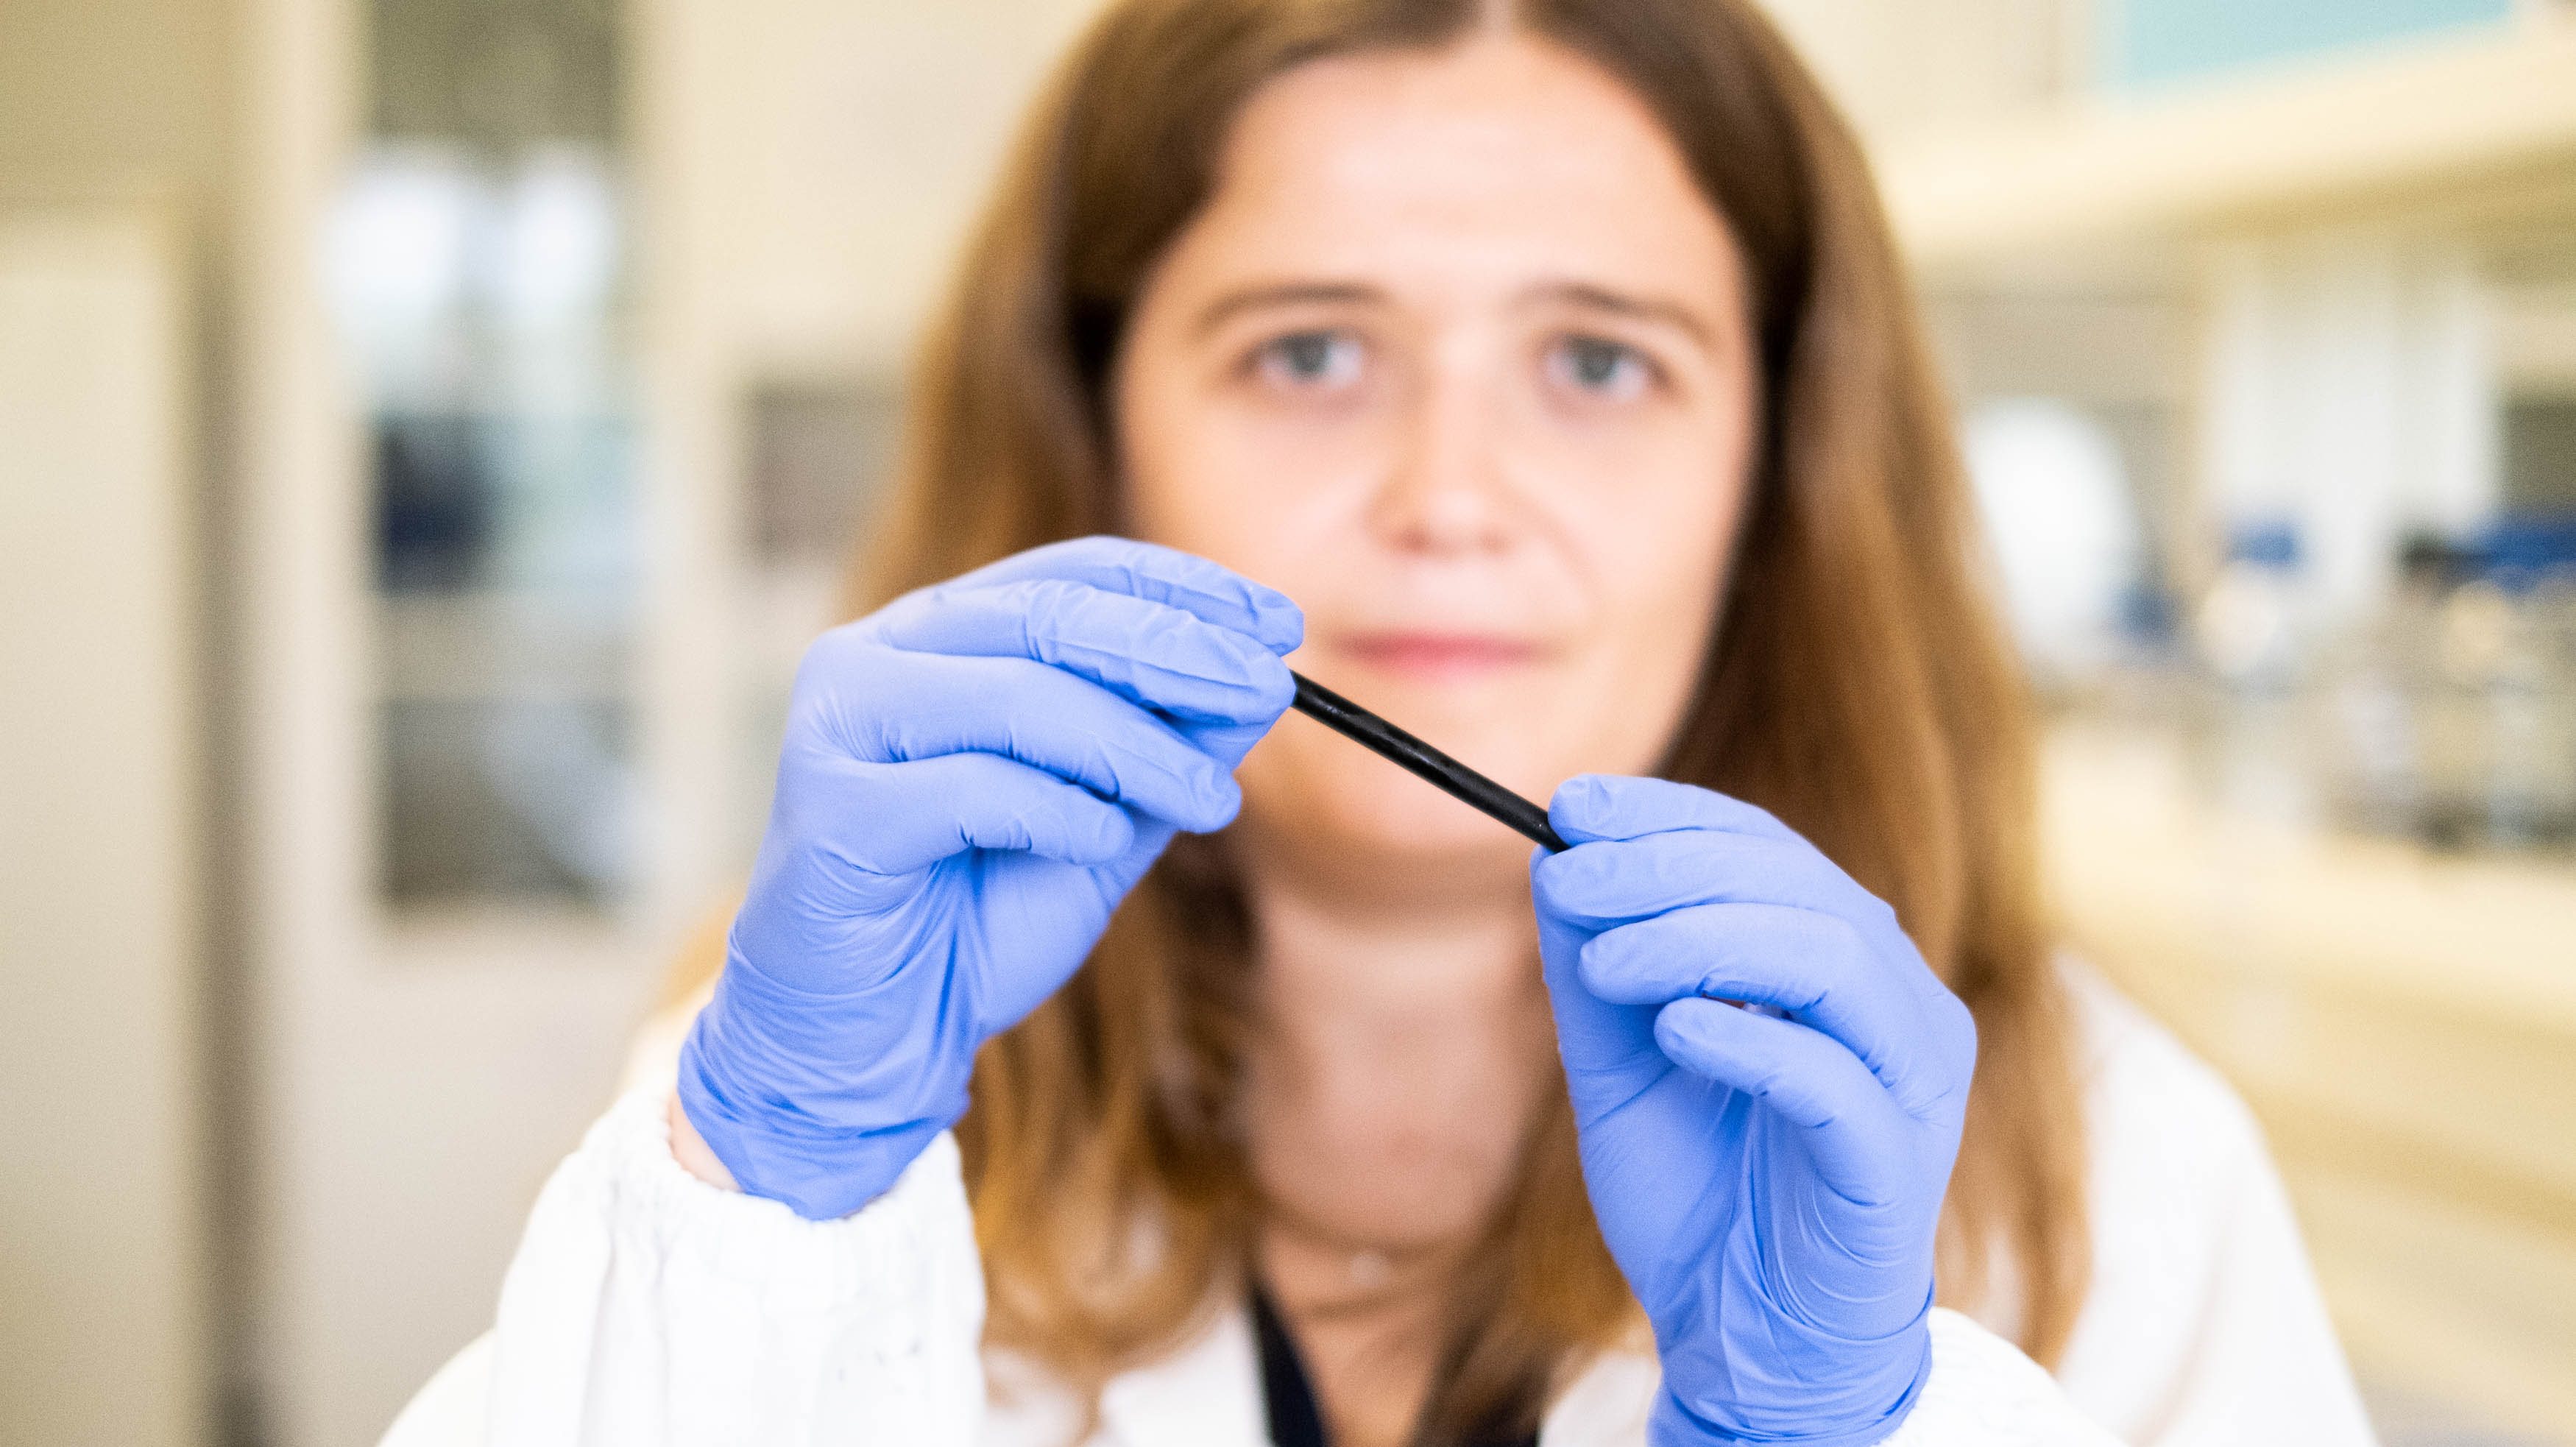 Especialista em bioquímica e bioengenharia, Andreia Pereira estuda a possibilidade de desenvolver pequenos vasos sanguíneos artificiais à base de grafeno, um derivado do carbono